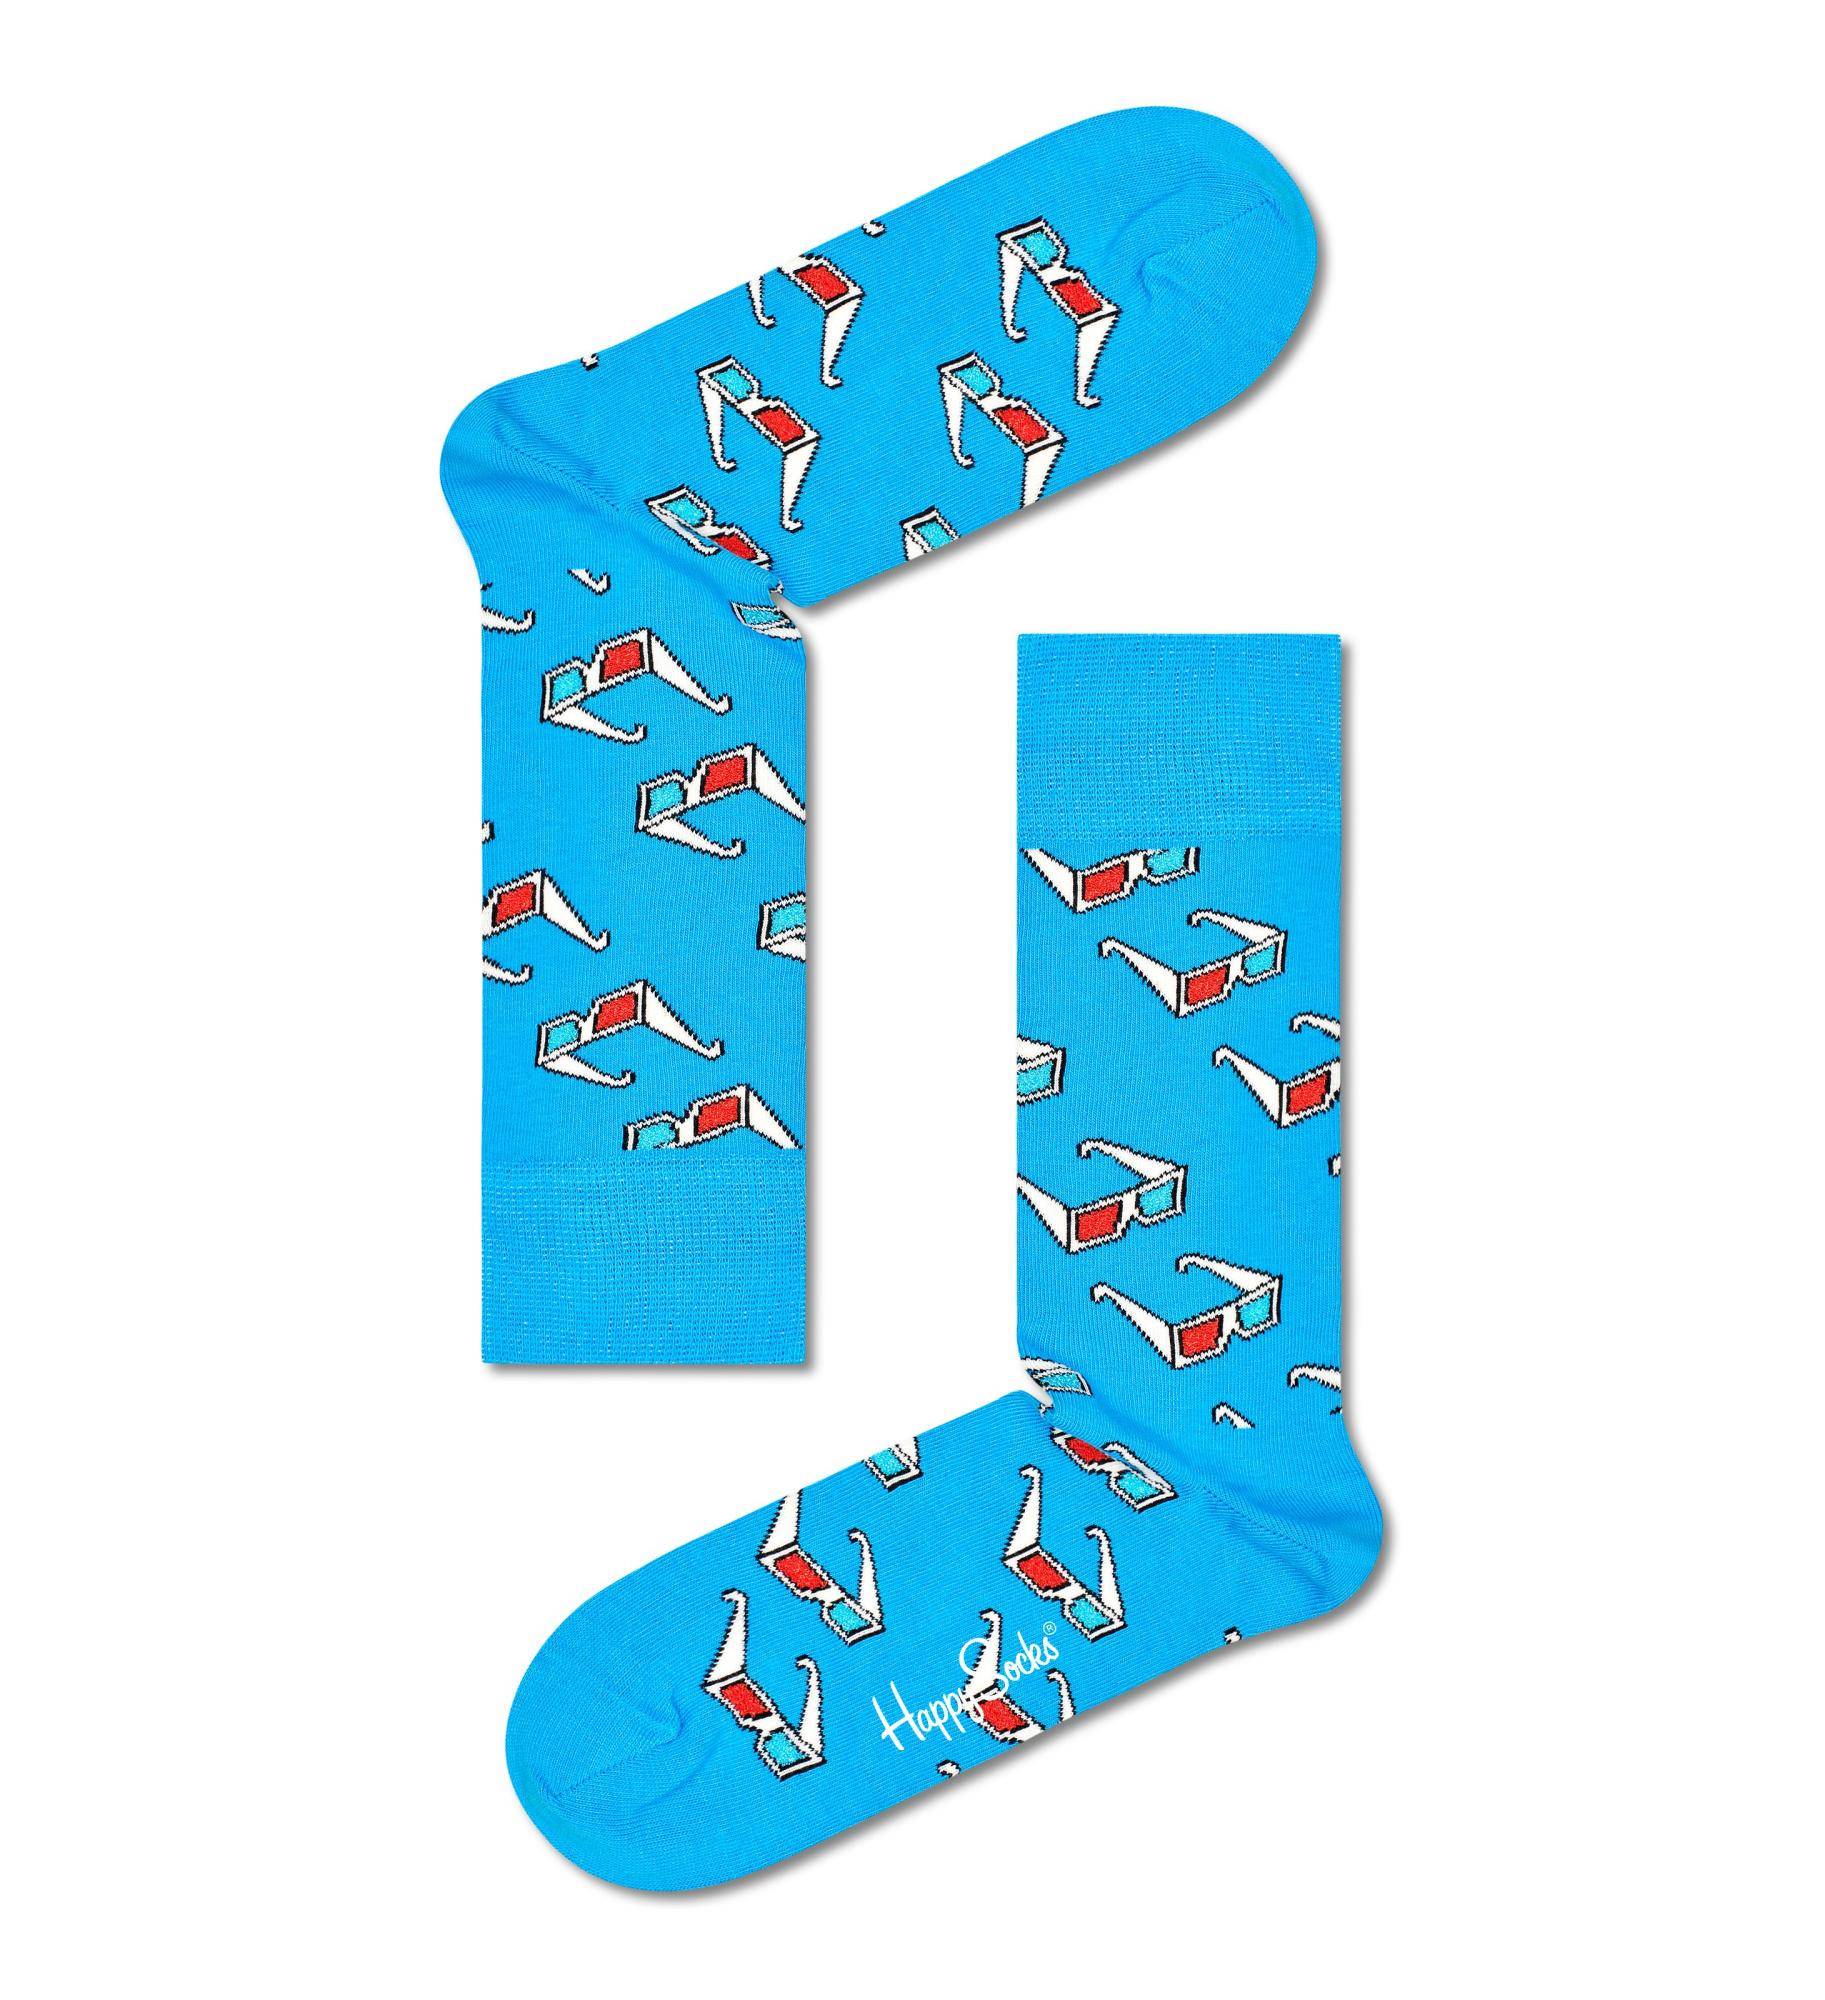 Носки Happy socks 3D Glasses Sock GLA01 6300, размер 29 - фото 1